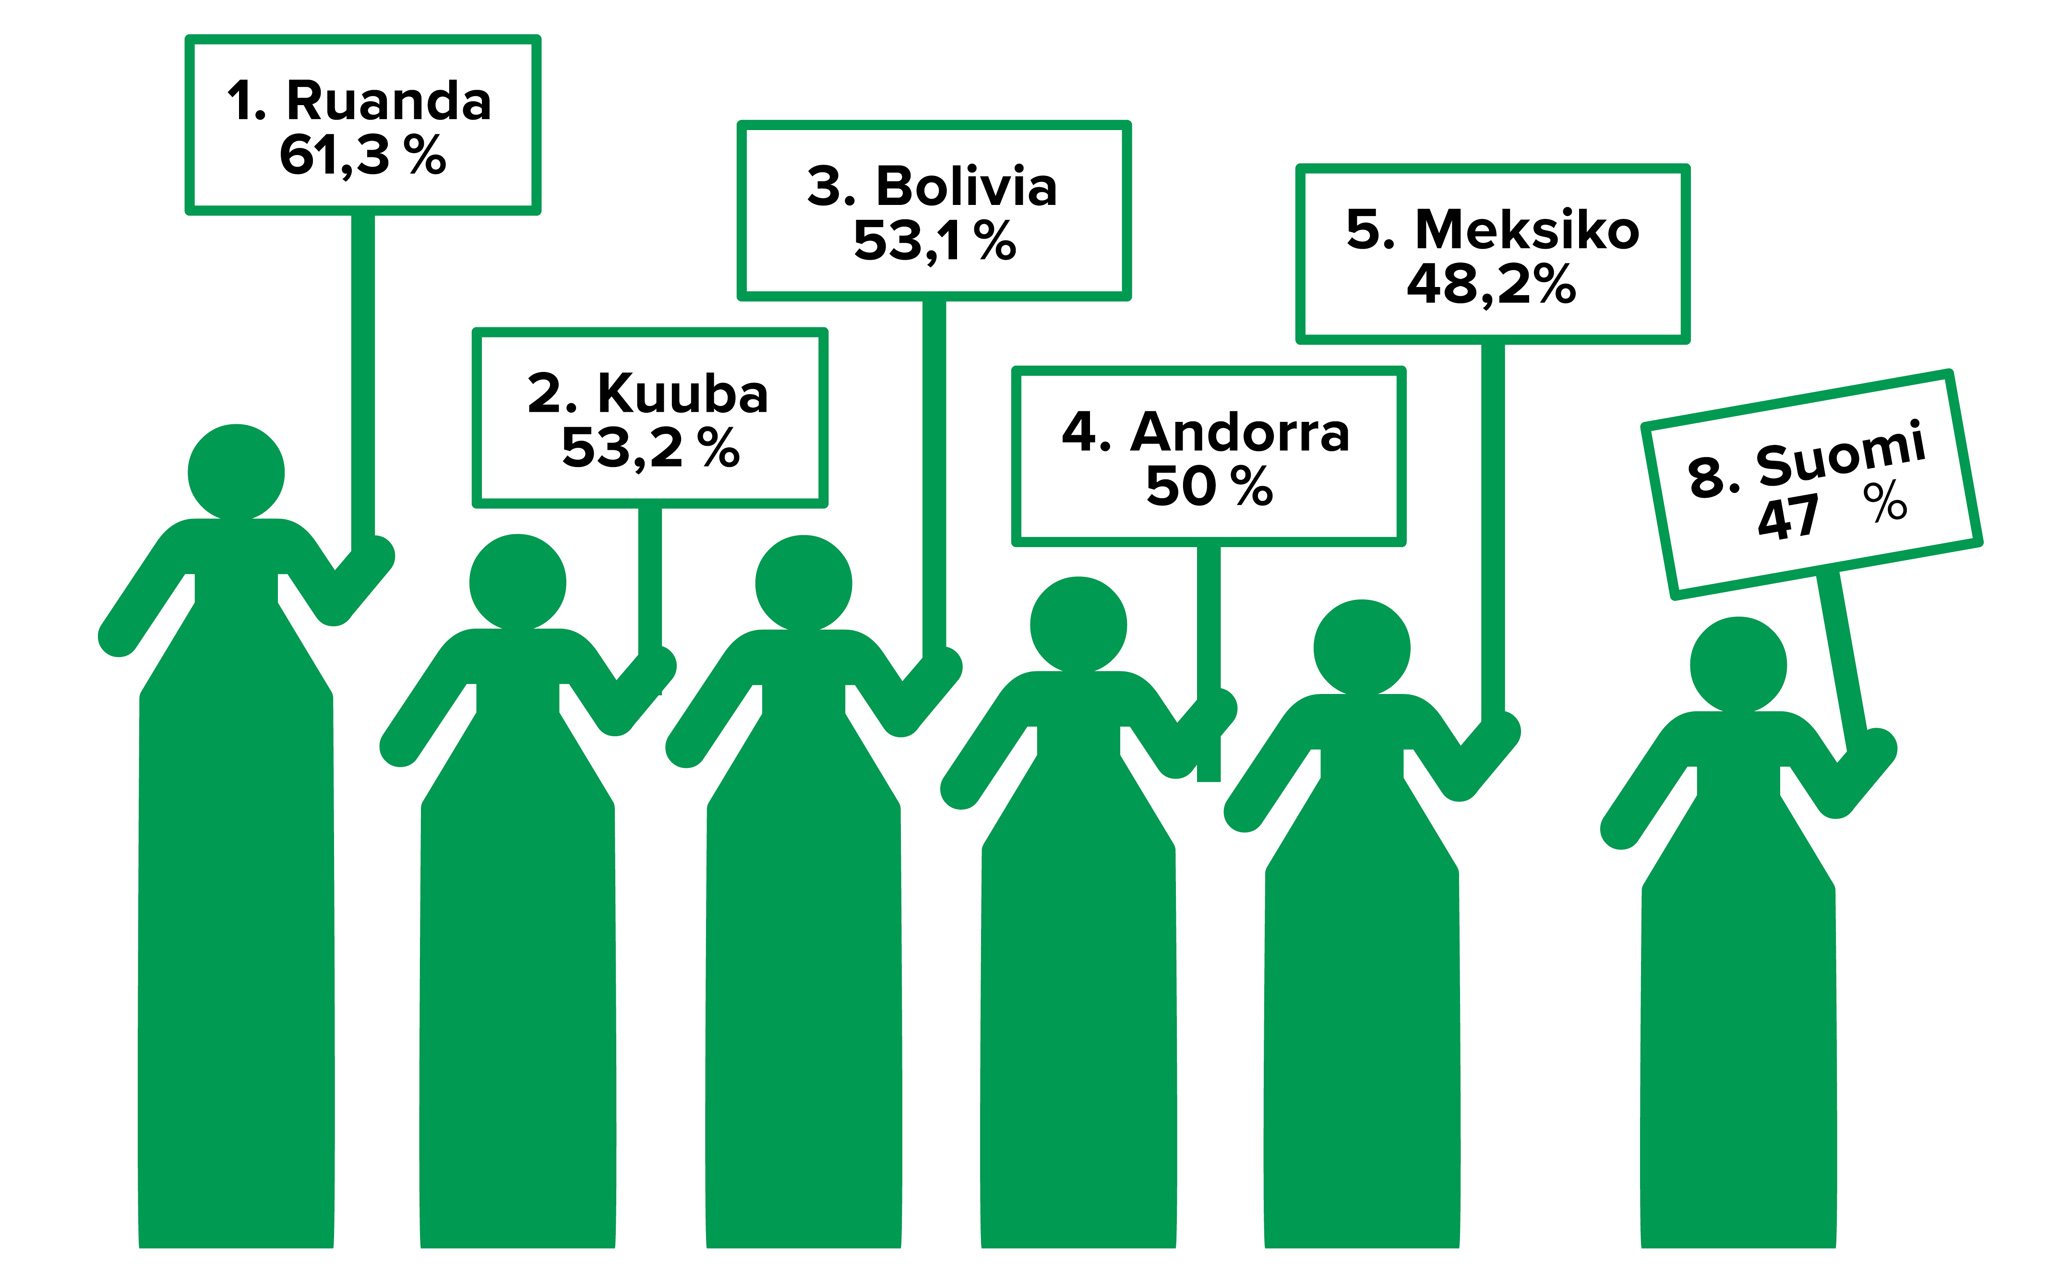 Maailman naisvaltaisimmat parlamentit: 1. Ruanda (61,3%), 2. Kuuba (53,2%), 3. Bolivia (52,1%), 4. Andorra (50%), 5. Meksiko (48,2%), 8. Suomi (47%)